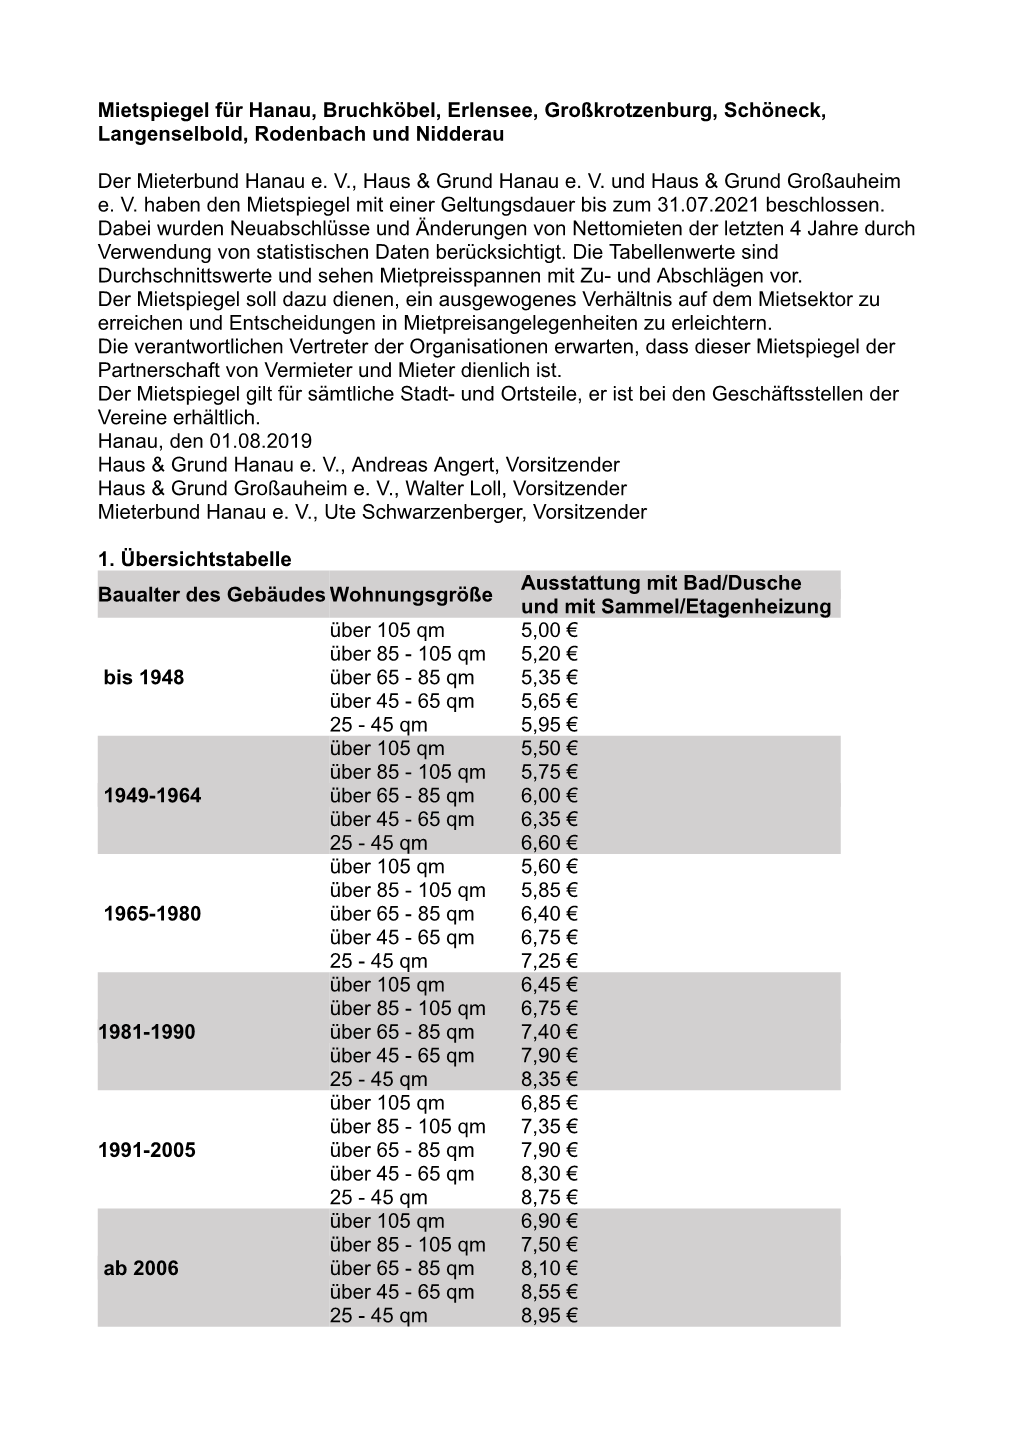 Mietspiegel Für Hanau, Bruchköbel, Erlensee, Großkrotzenburg, Schöneck, Langenselbold, Rodenbach Und Nidderau Der Mieterbund